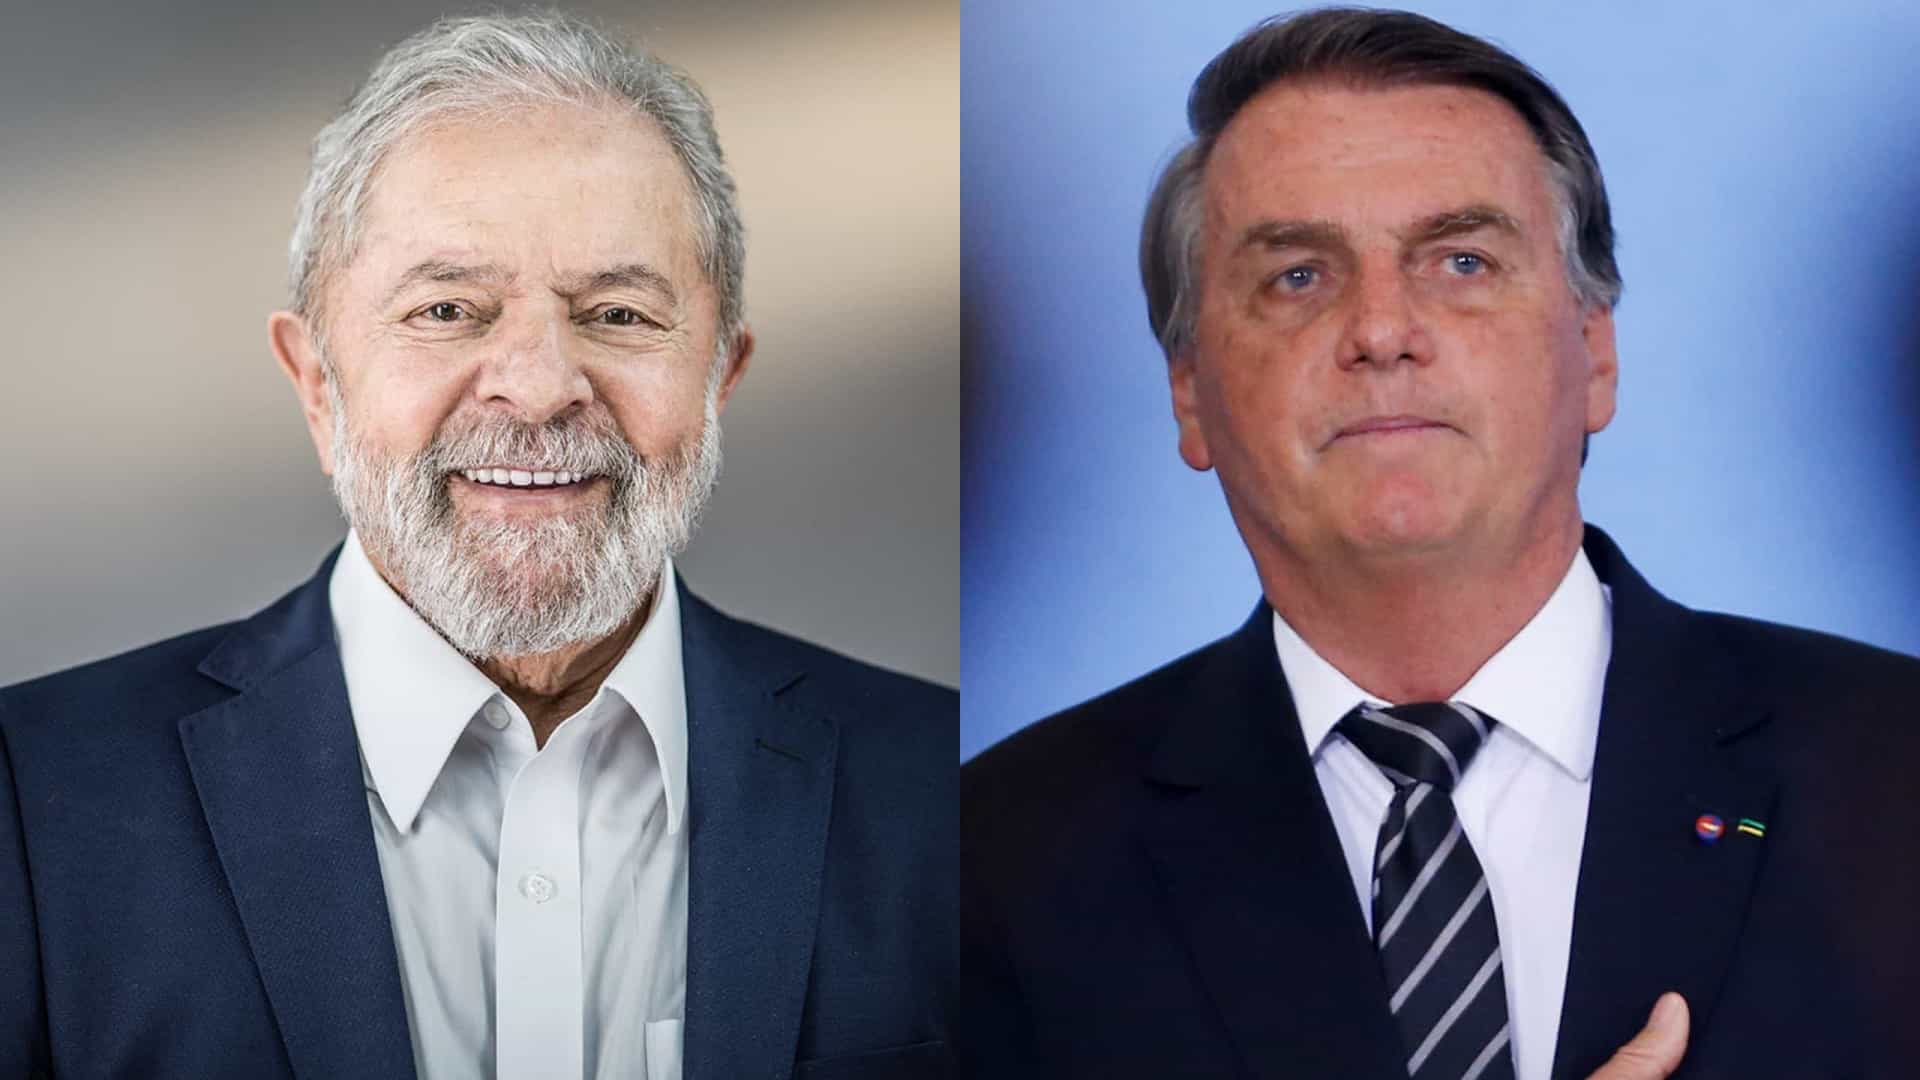 Para eleitores, Lula defende pobres, e Bolsonaro se guia pela religião, diz Datafolha